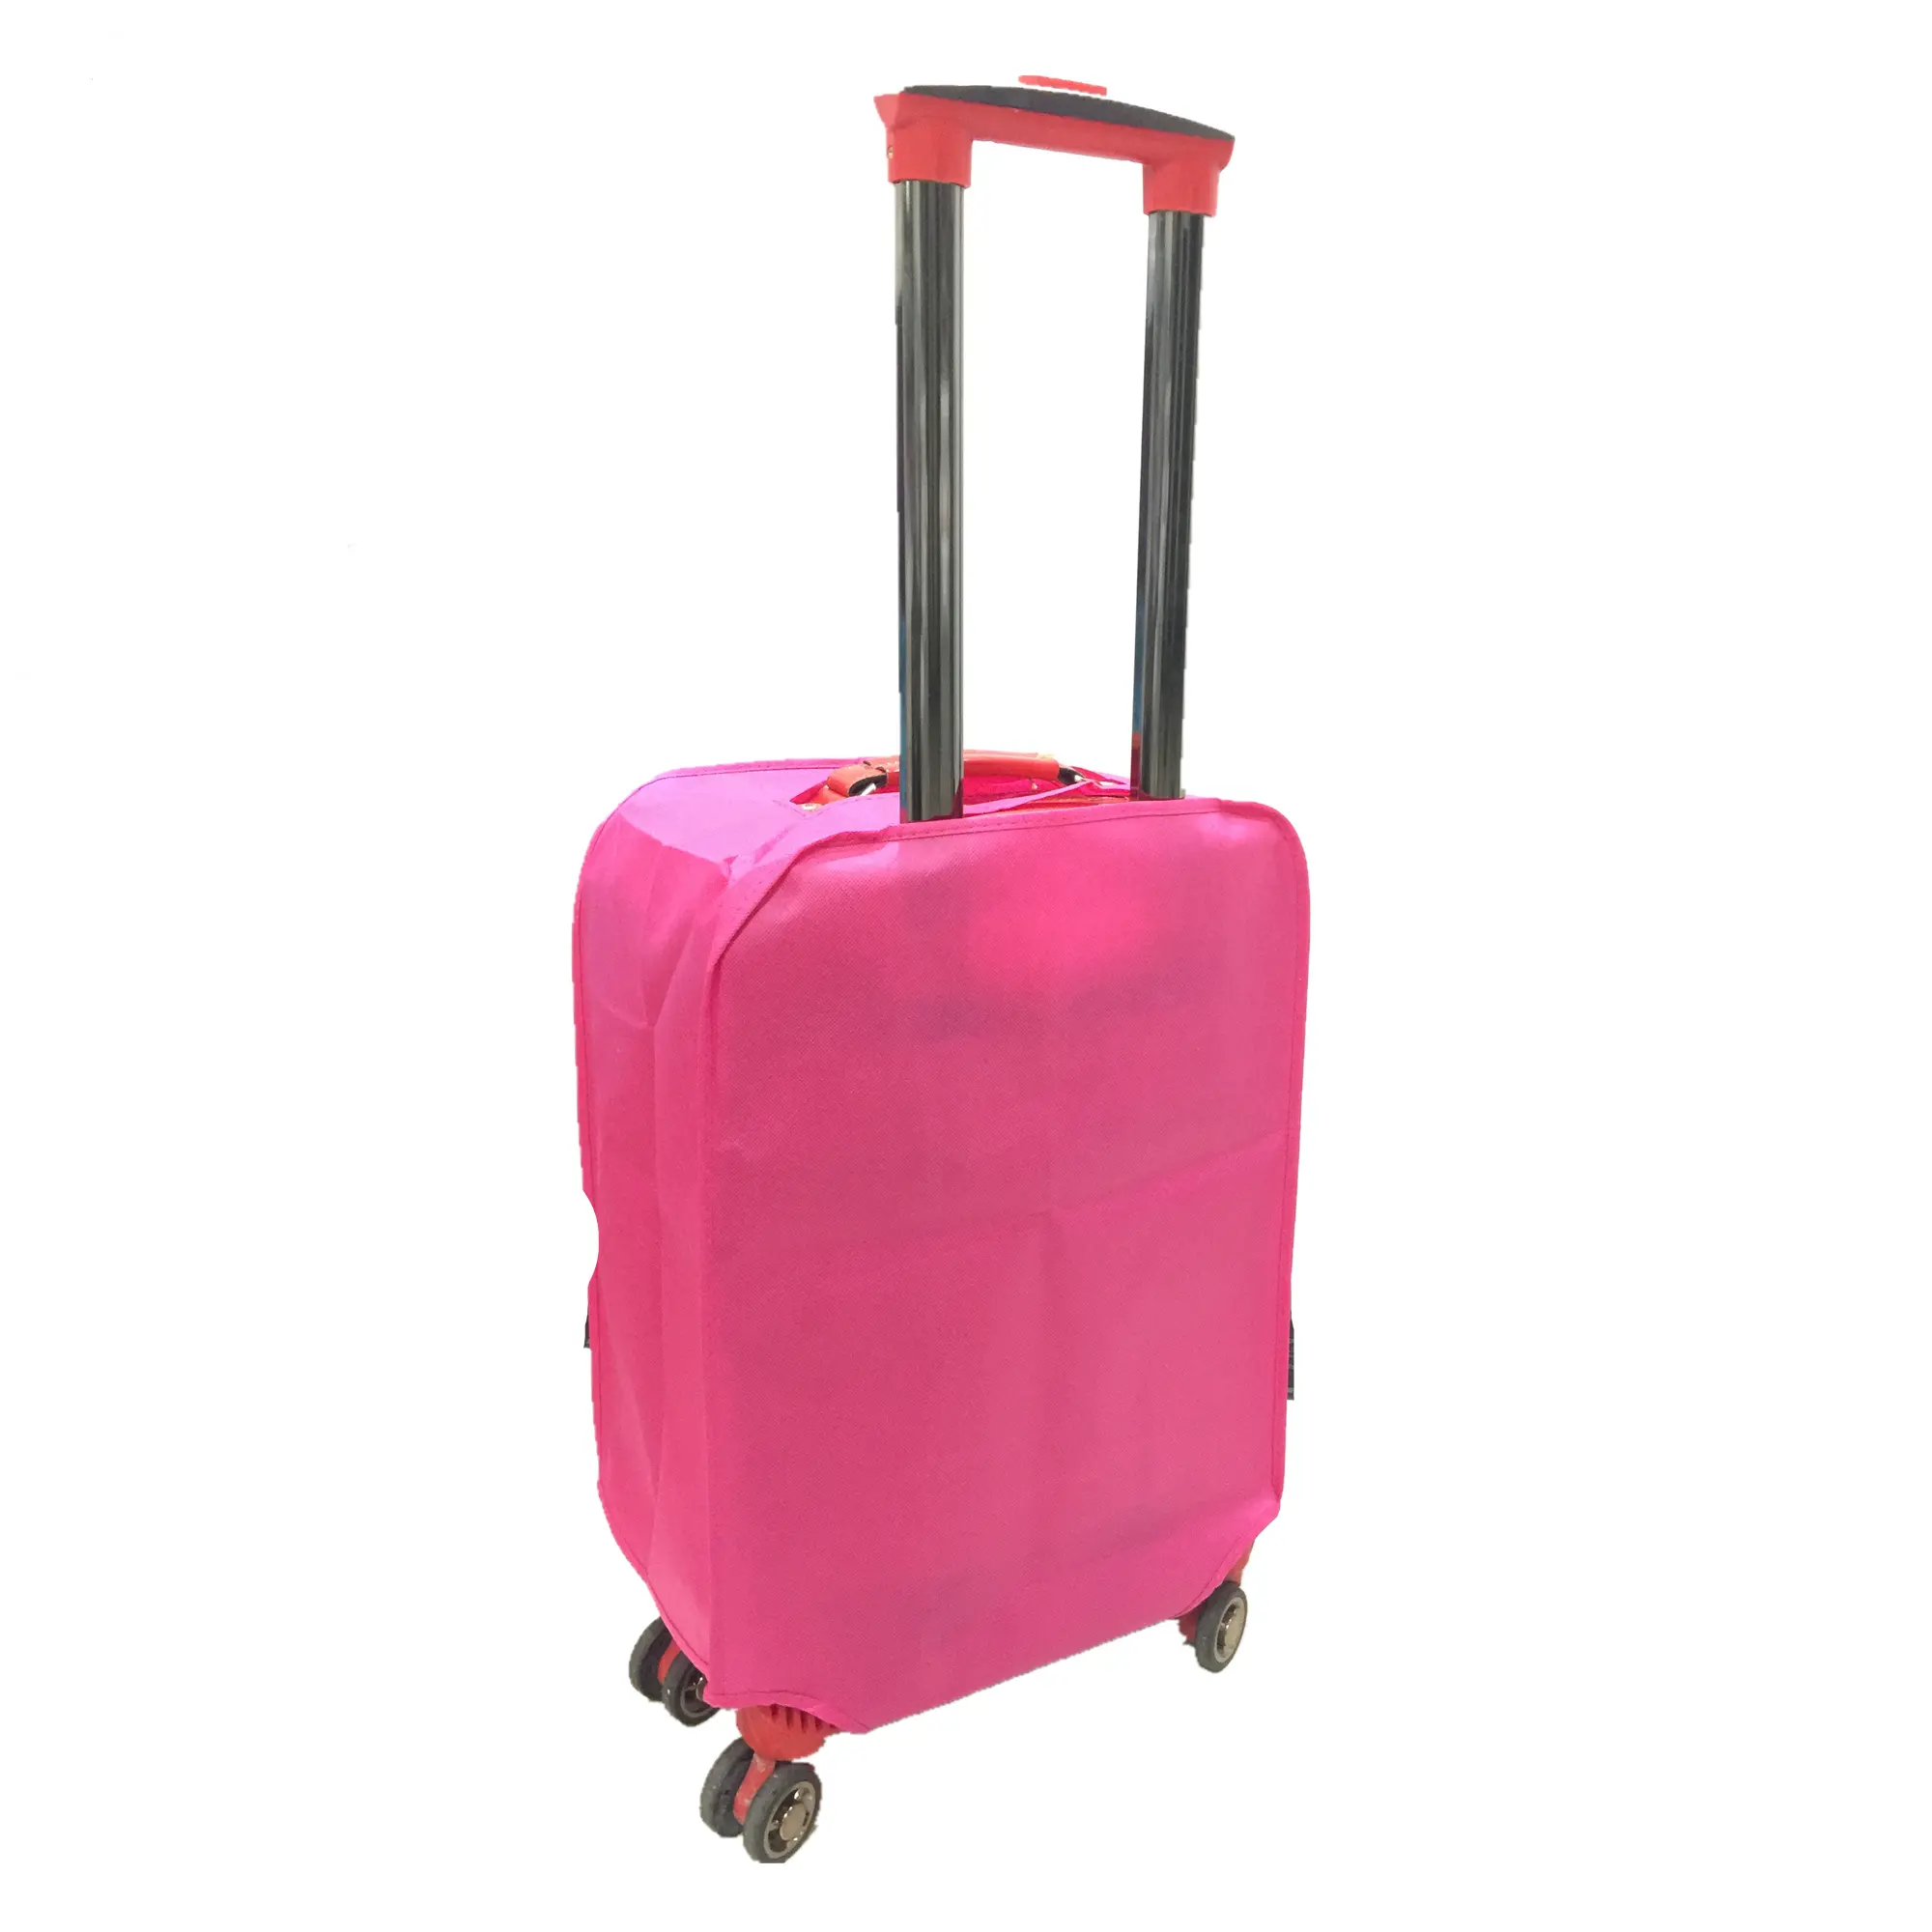 Penutup koper pelindung bagasi ukuran besar, penutup koper antiair bukan tenun, pelindung koper plastik ukuran besar